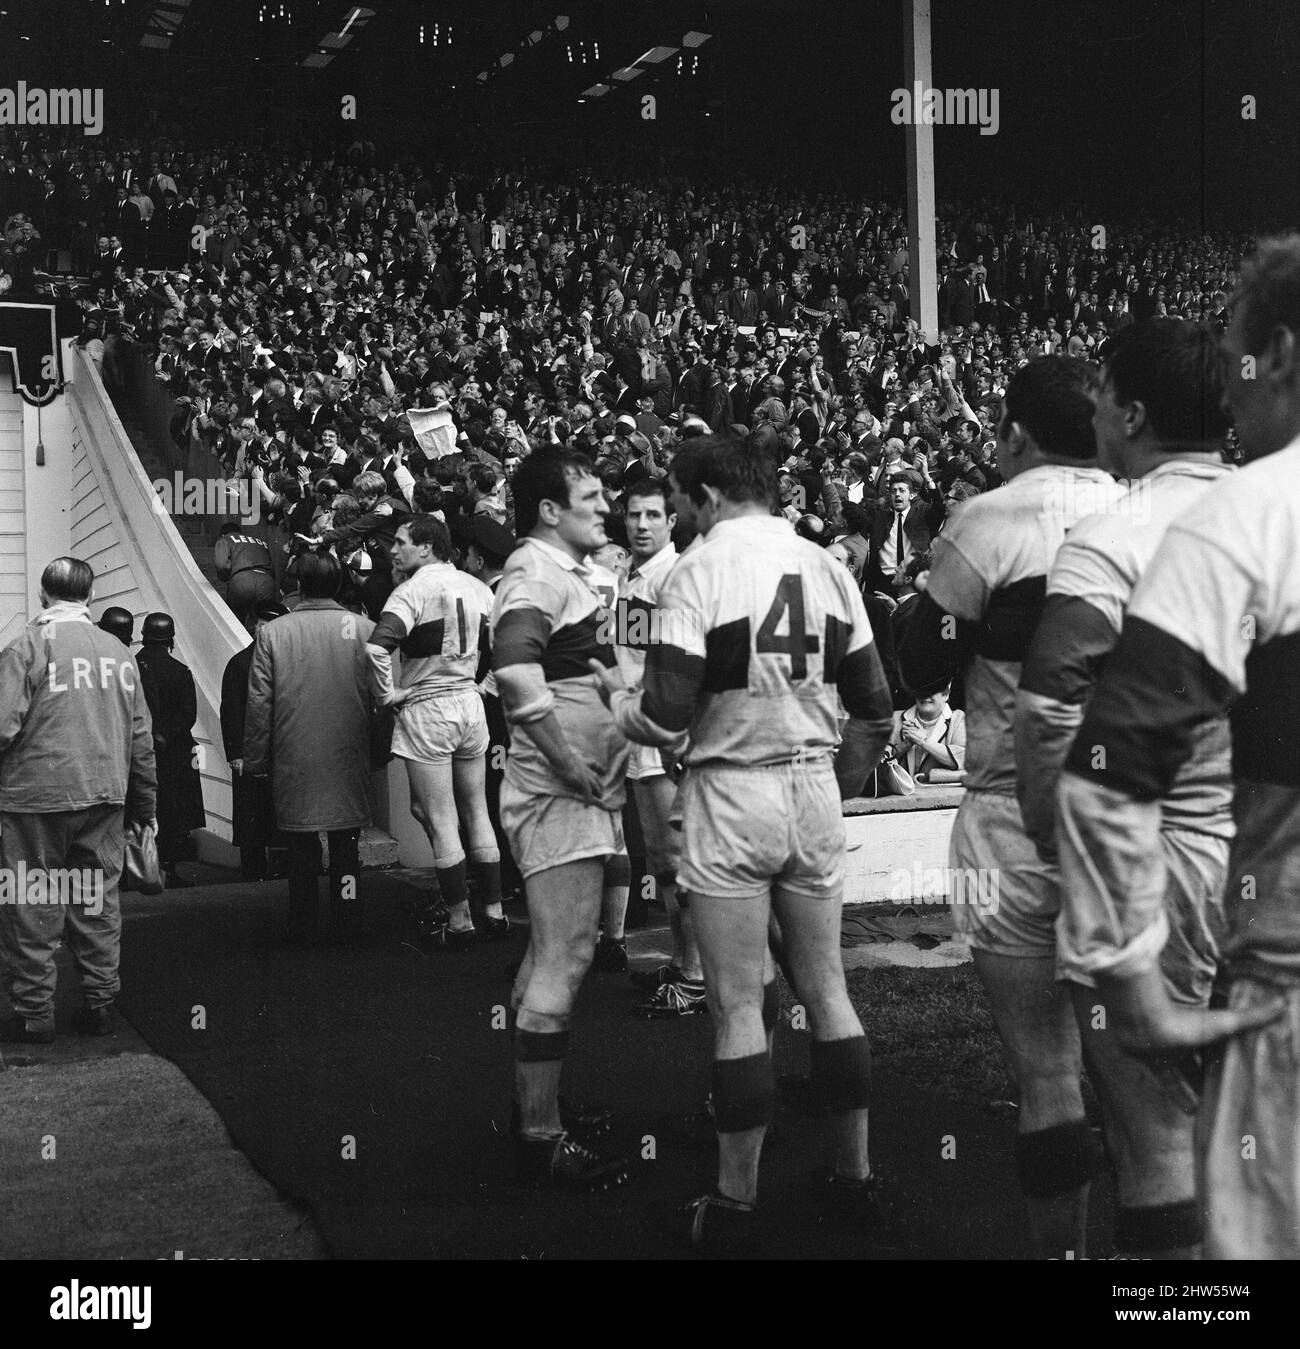 Leeds 11-10 Wakefield Trinity, Rugby League Challenge Cup final Match au stade Wembley, Londres, samedi 11th mai 1968. Notre photo montre ... Don Fox de Wakefield à la fin du match, après avoir manqué une conversion devant les postes dans la dernière minute du jeu, donnant à Leeds une victoire de 11?10. Banque D'Images